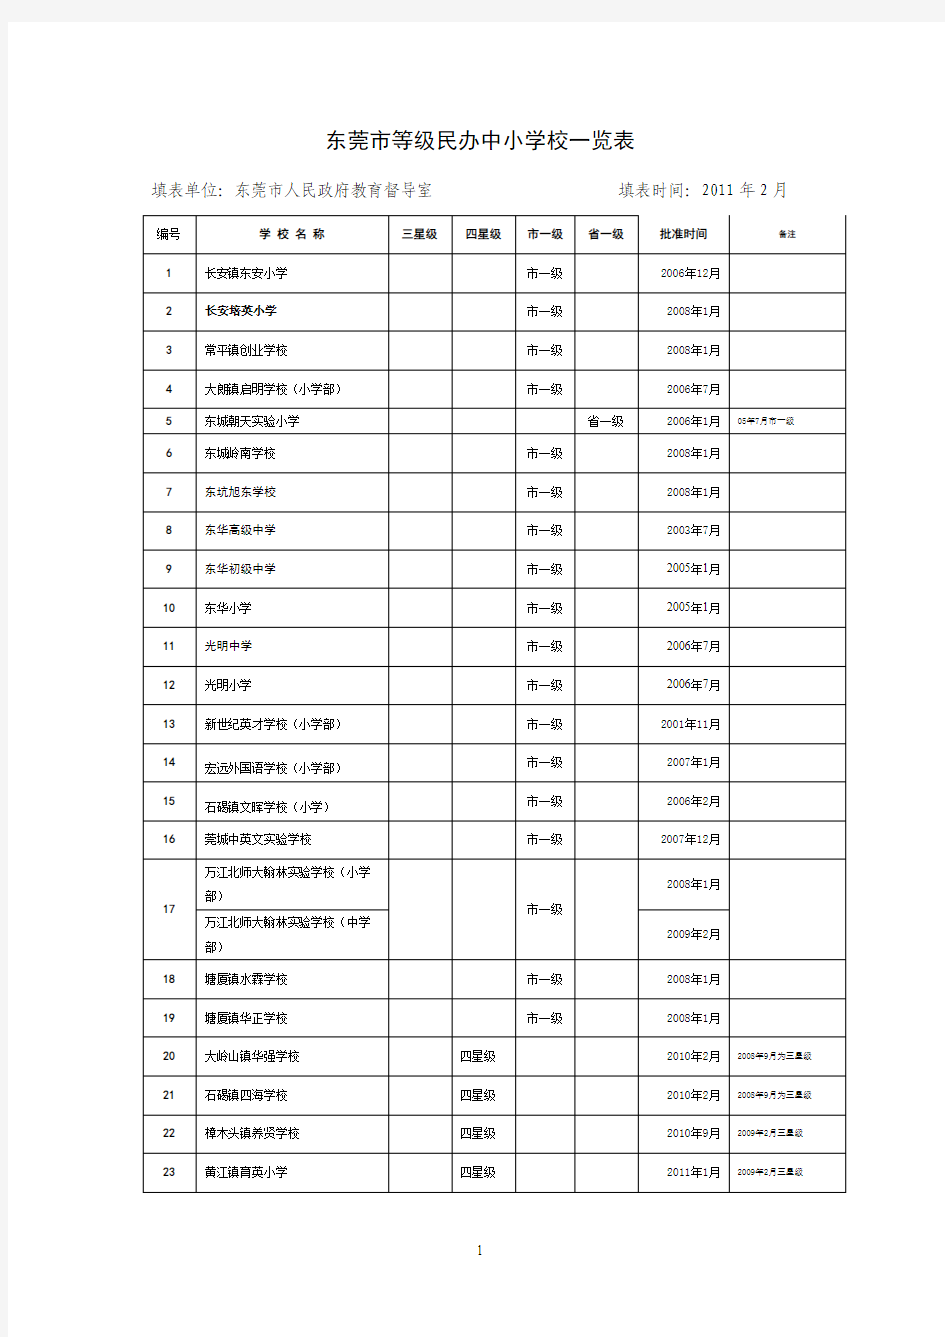 东莞市等级学校一览表